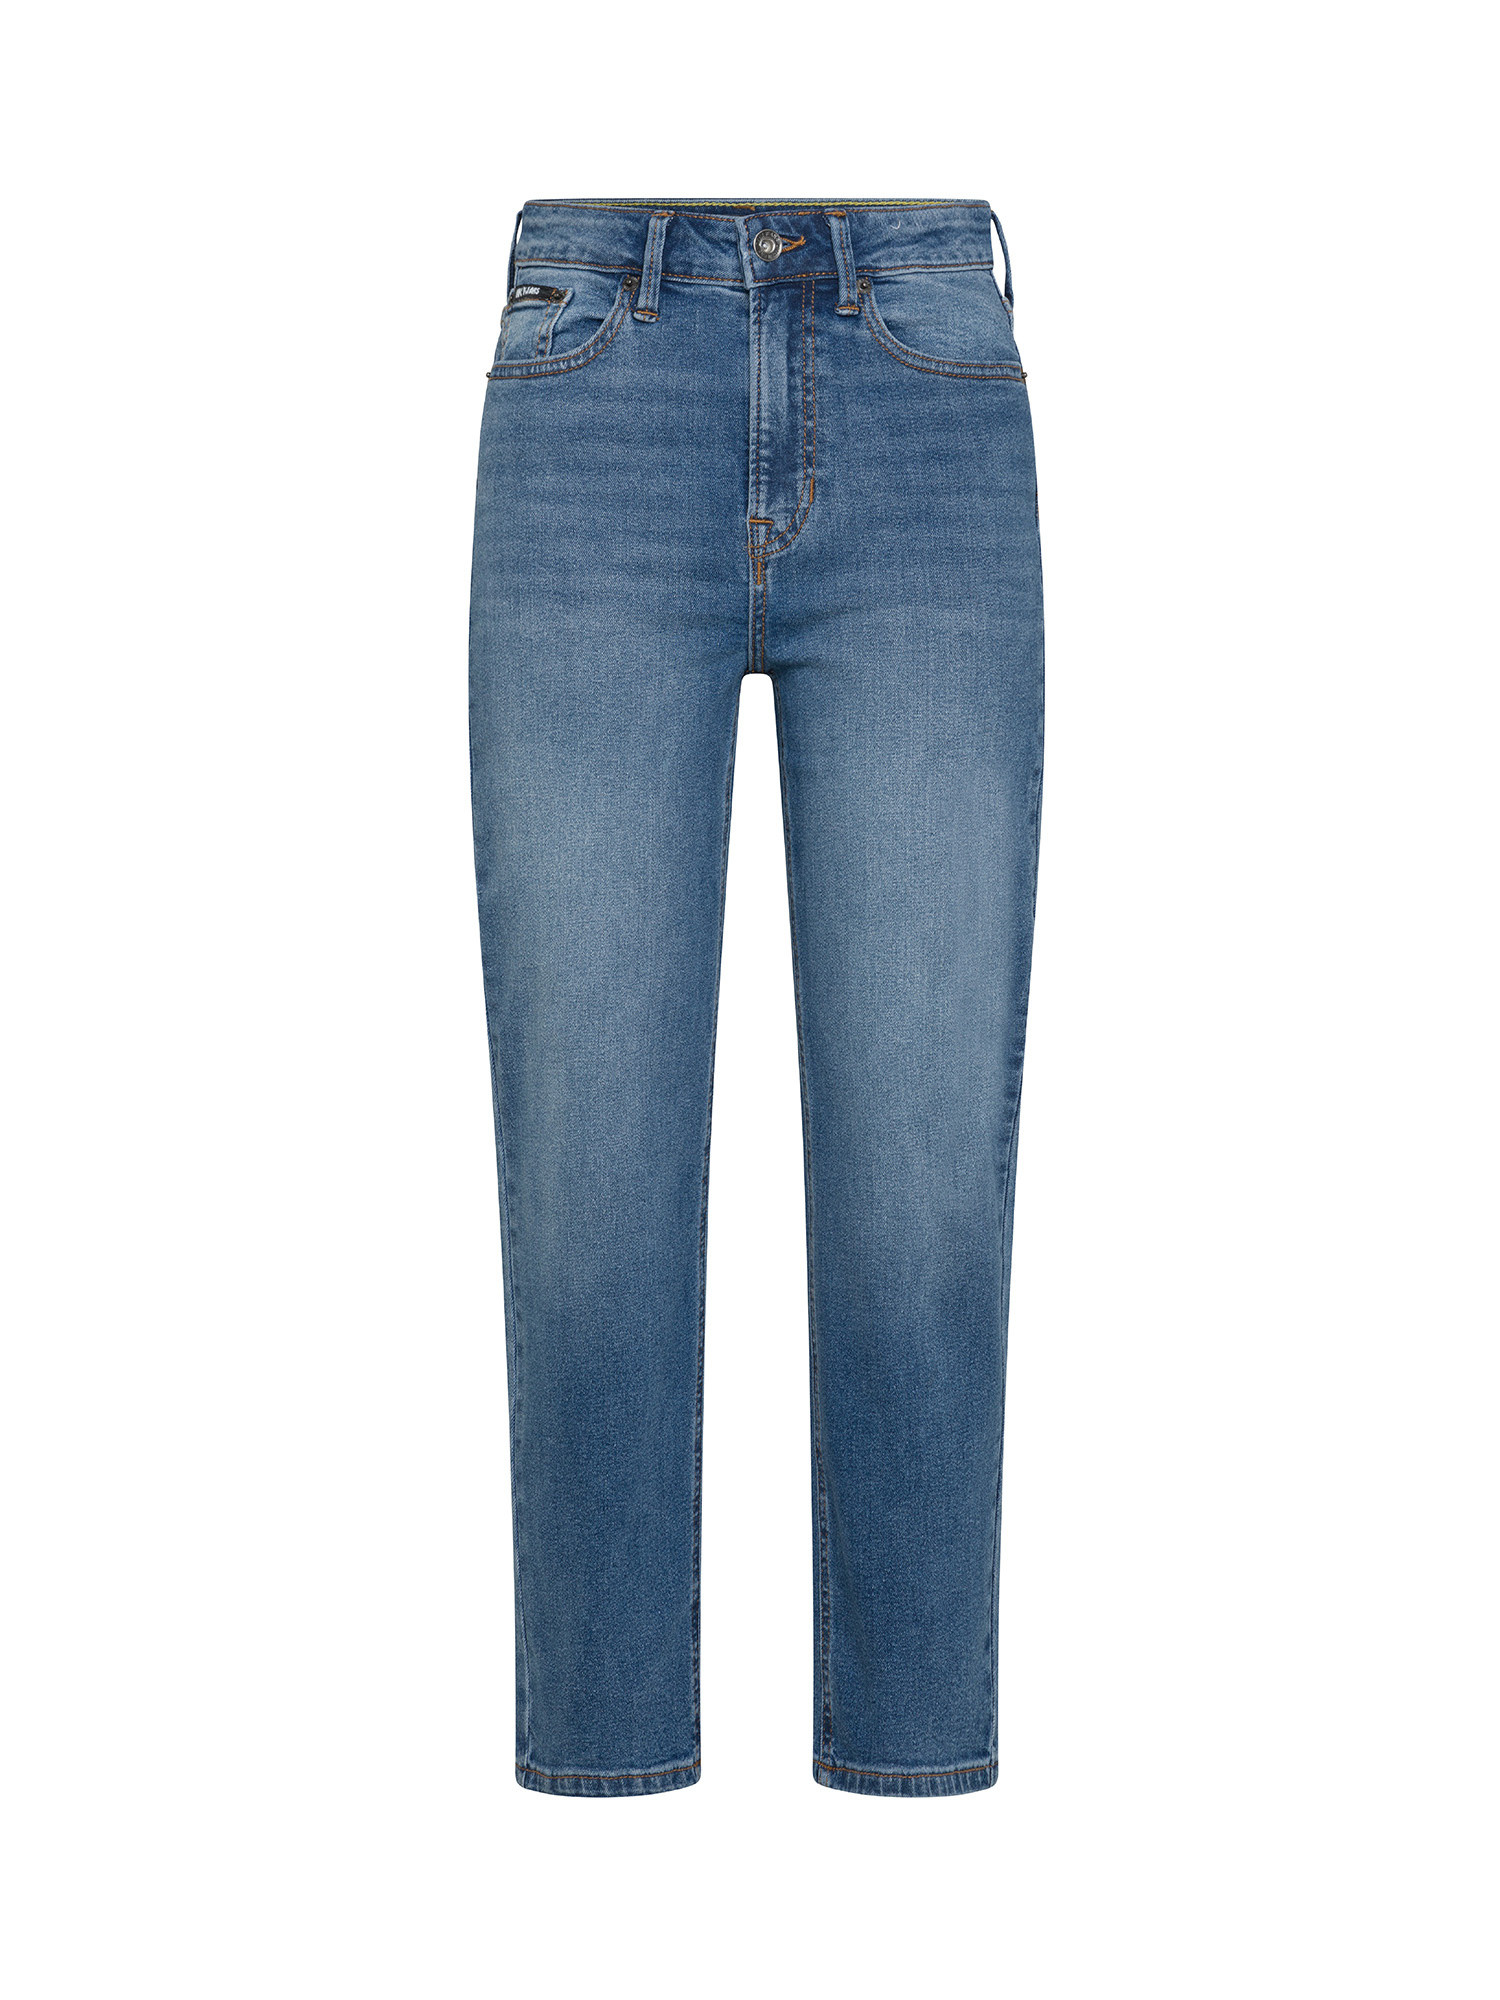 DKNY - Jeans a vita alta con taglio dritto e leggermente cropped, Denim, large image number 0